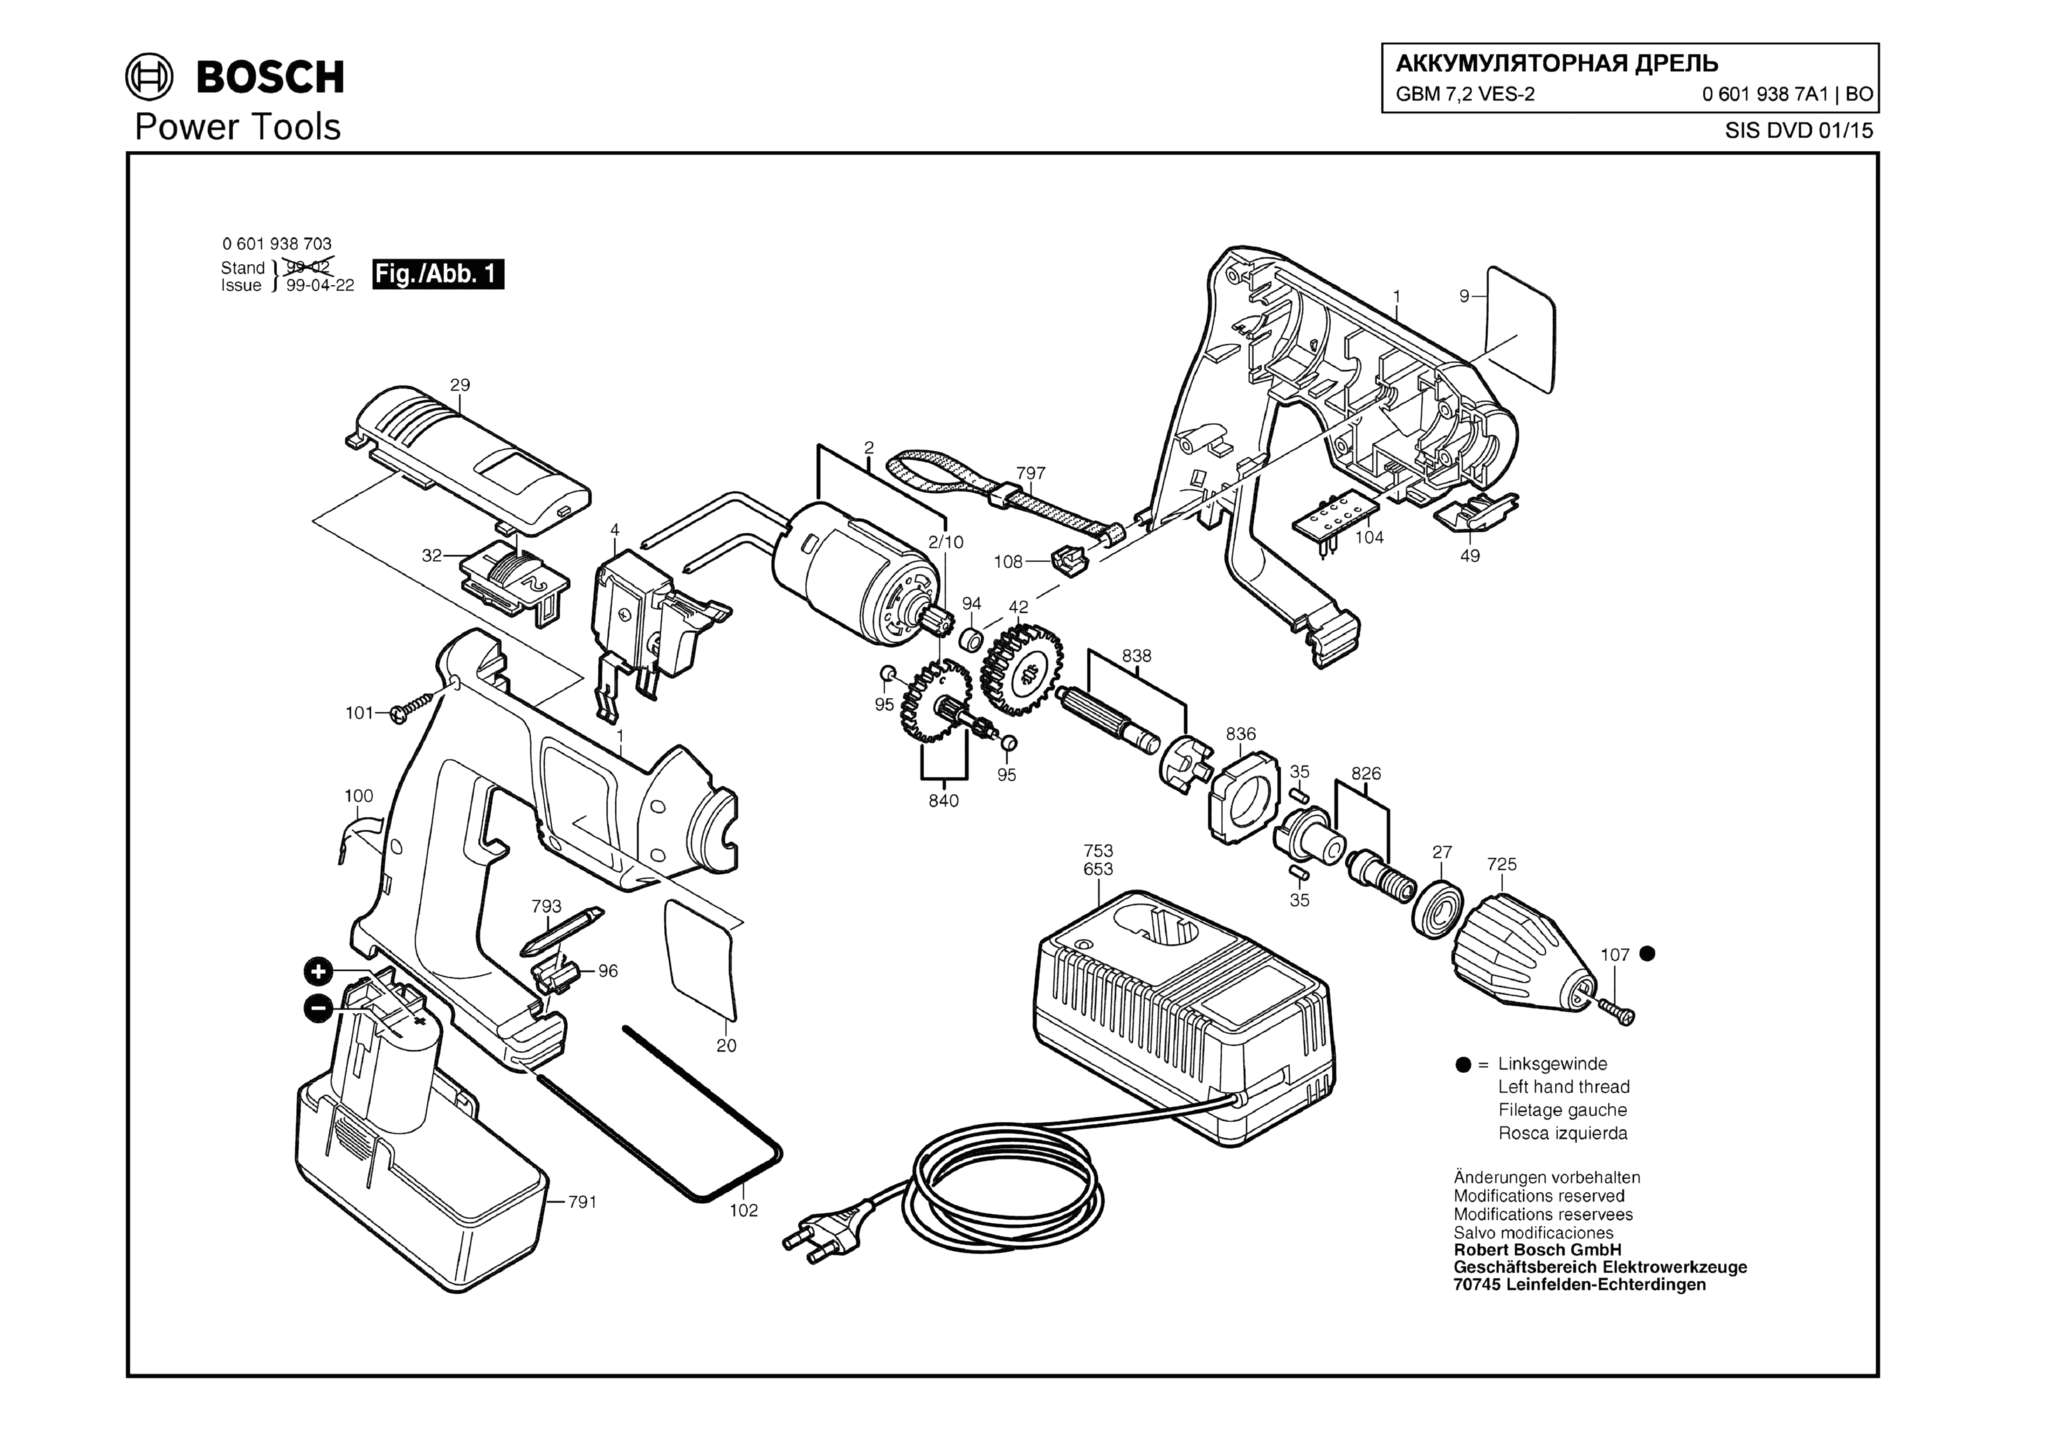 Запчасти, схема и деталировка Bosch GBM 7,2 VES-2 (ТИП 06019387A1)